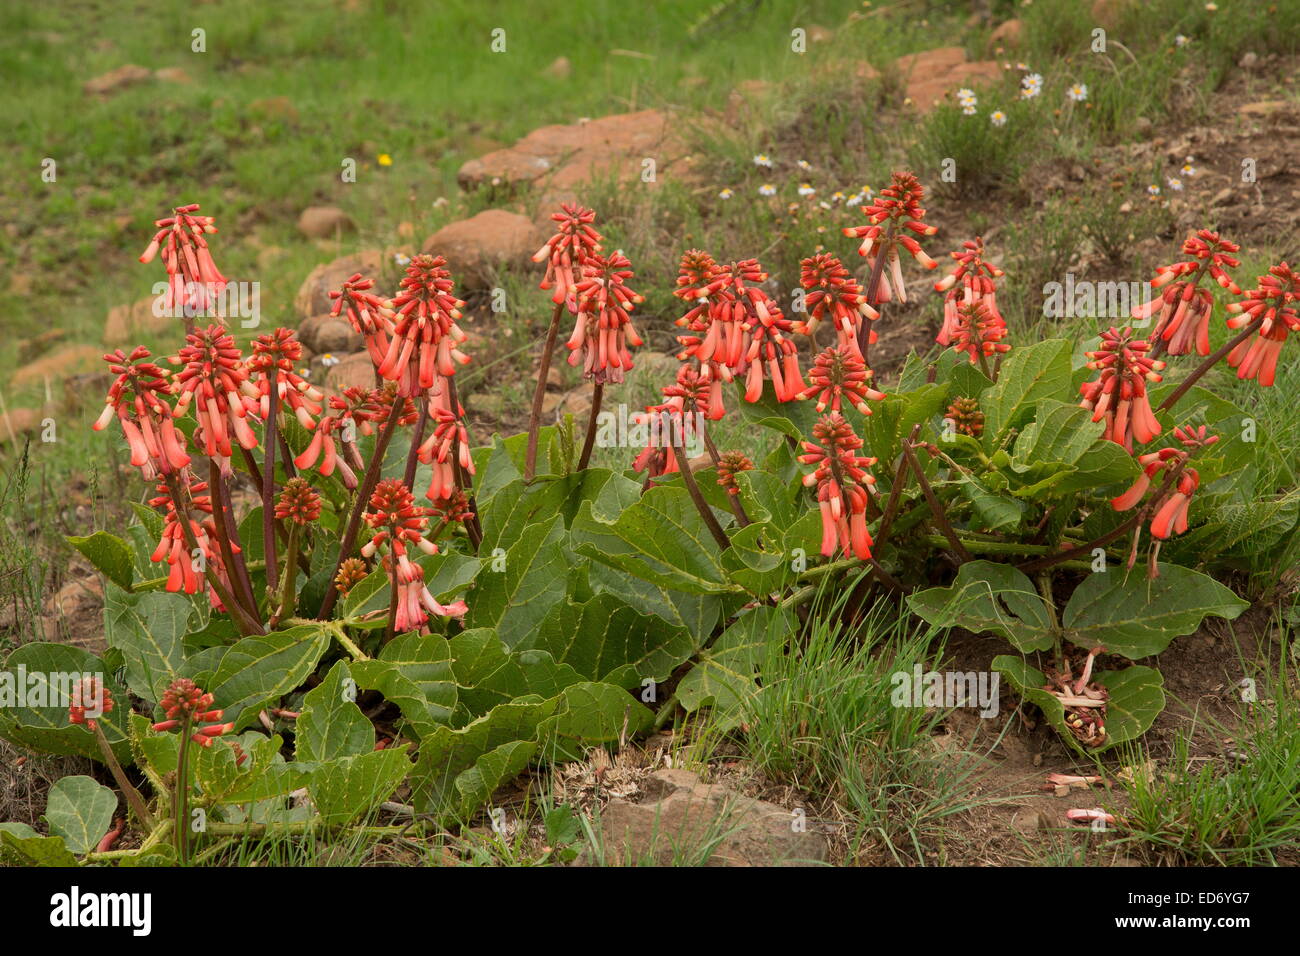 Plough-breaker, Erythrina zeyheri in flower, South Africa Stock Photo